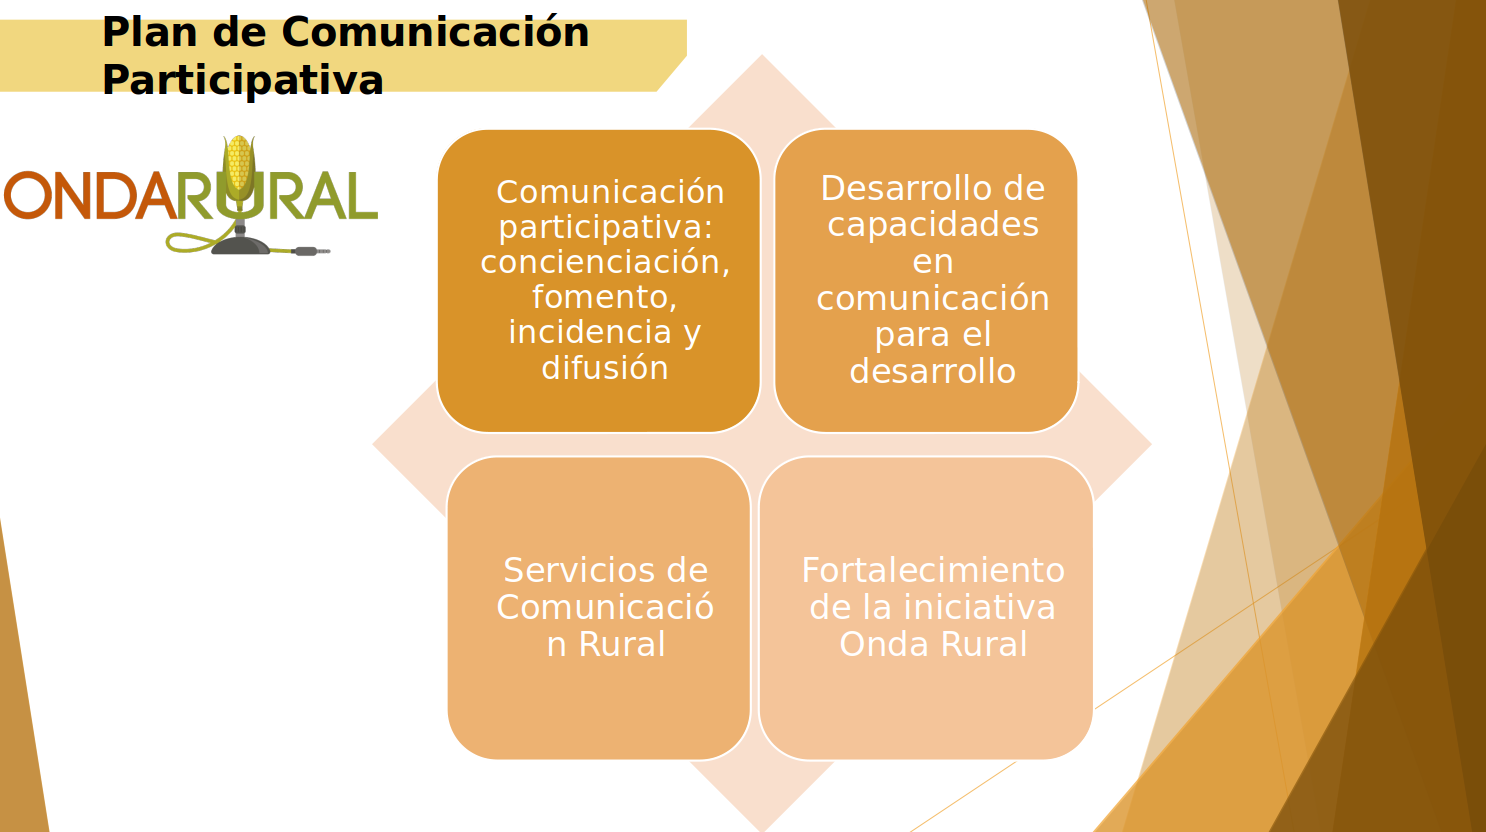 Plan de Comunicación Participativa Onda Rural